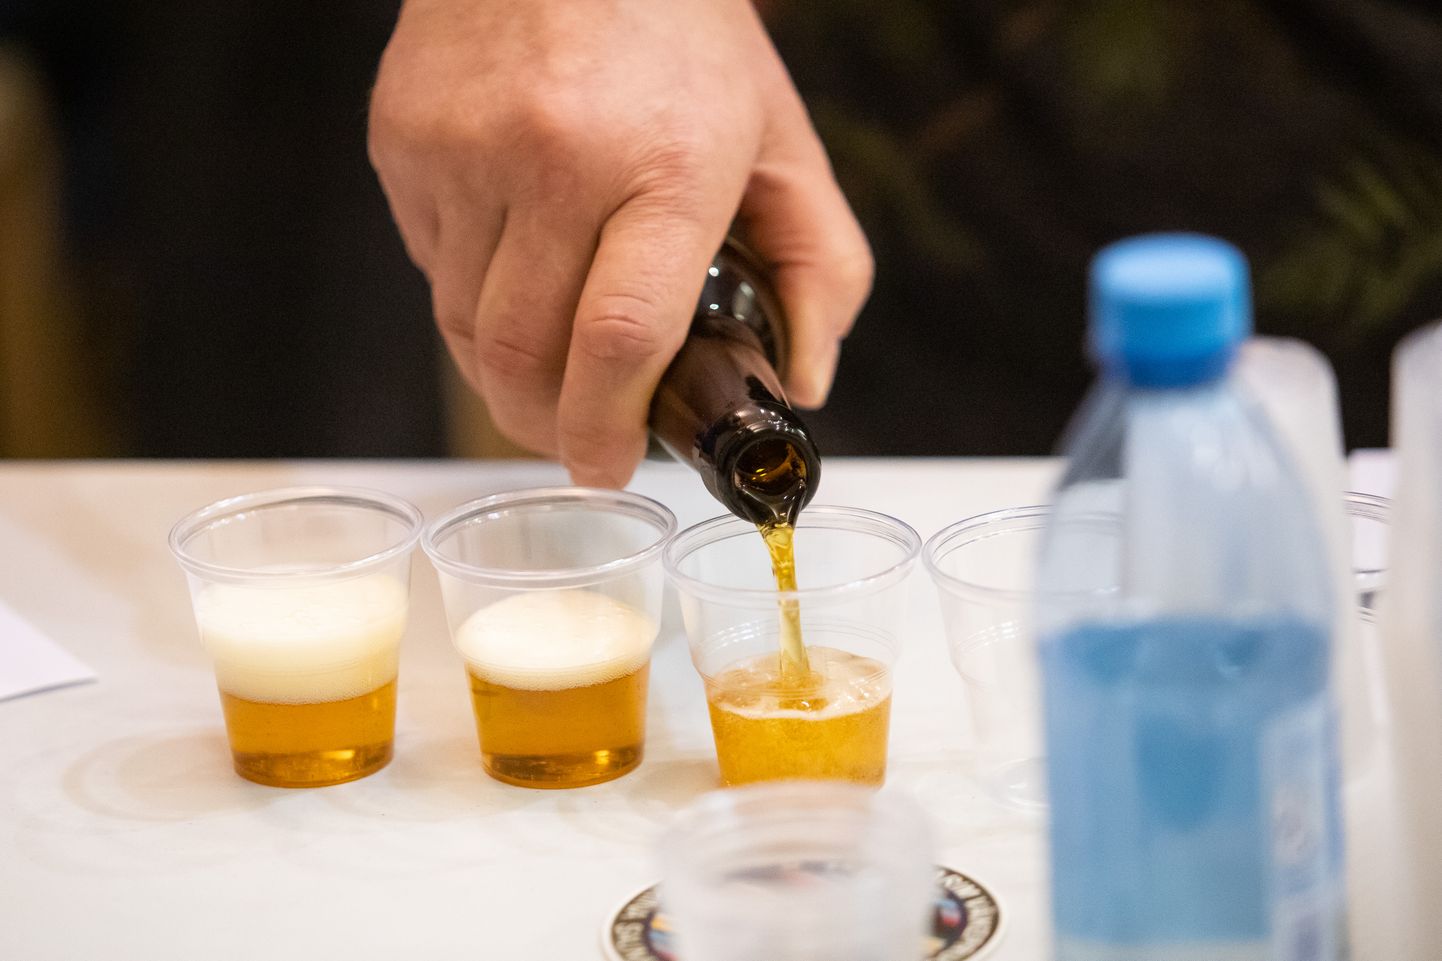 Konkursile on võimalik saata enda valmistatud õlut kuni 10. juunini.